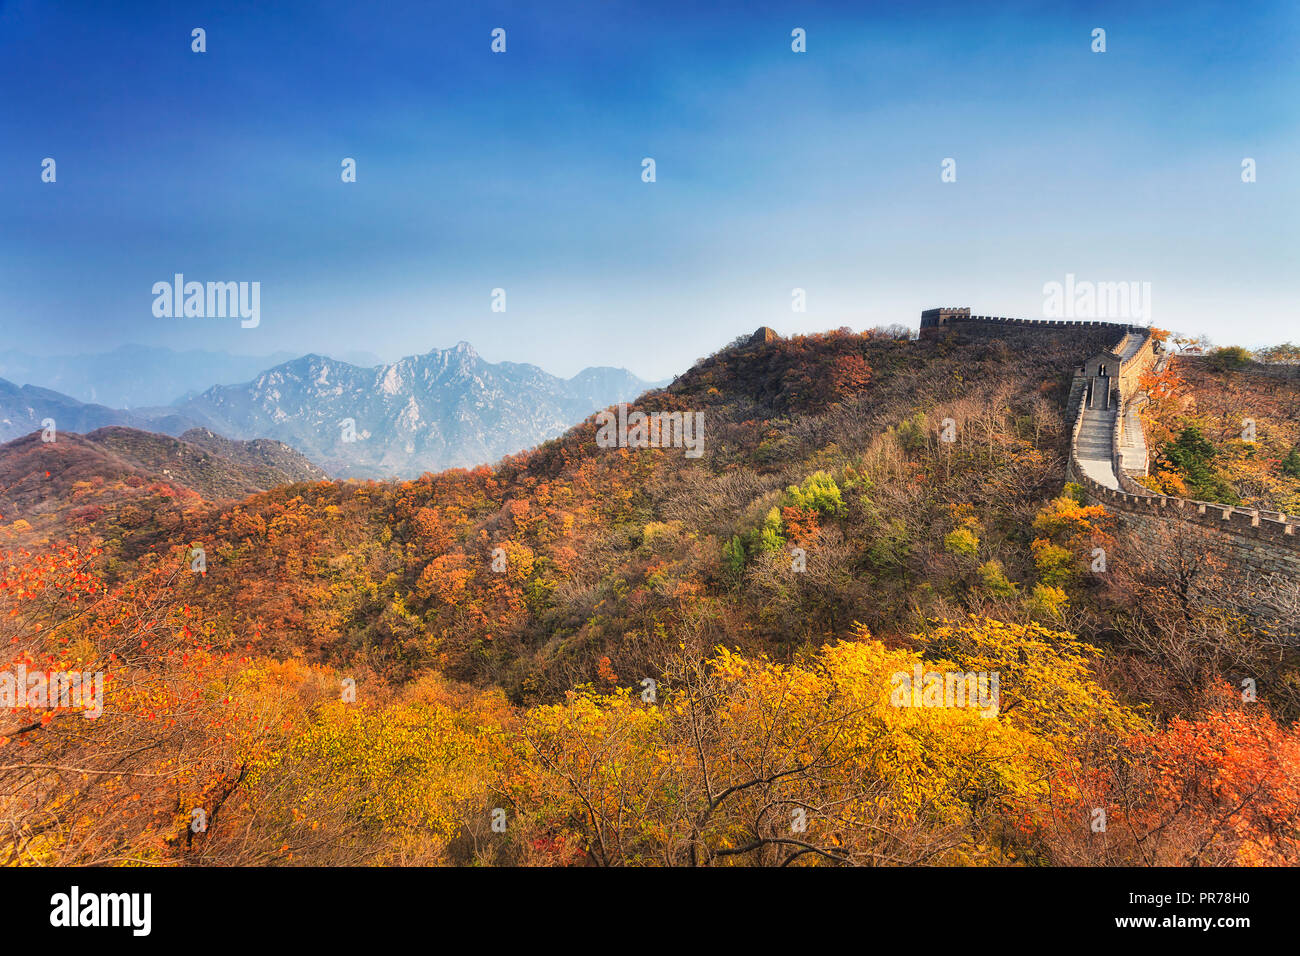 La Cina La grande muraglia antica fortificazione costruzione dall imperatore cinese dinastie volte stagione autunnale giallo alberi giornate soleggiate alta in moun Foto Stock